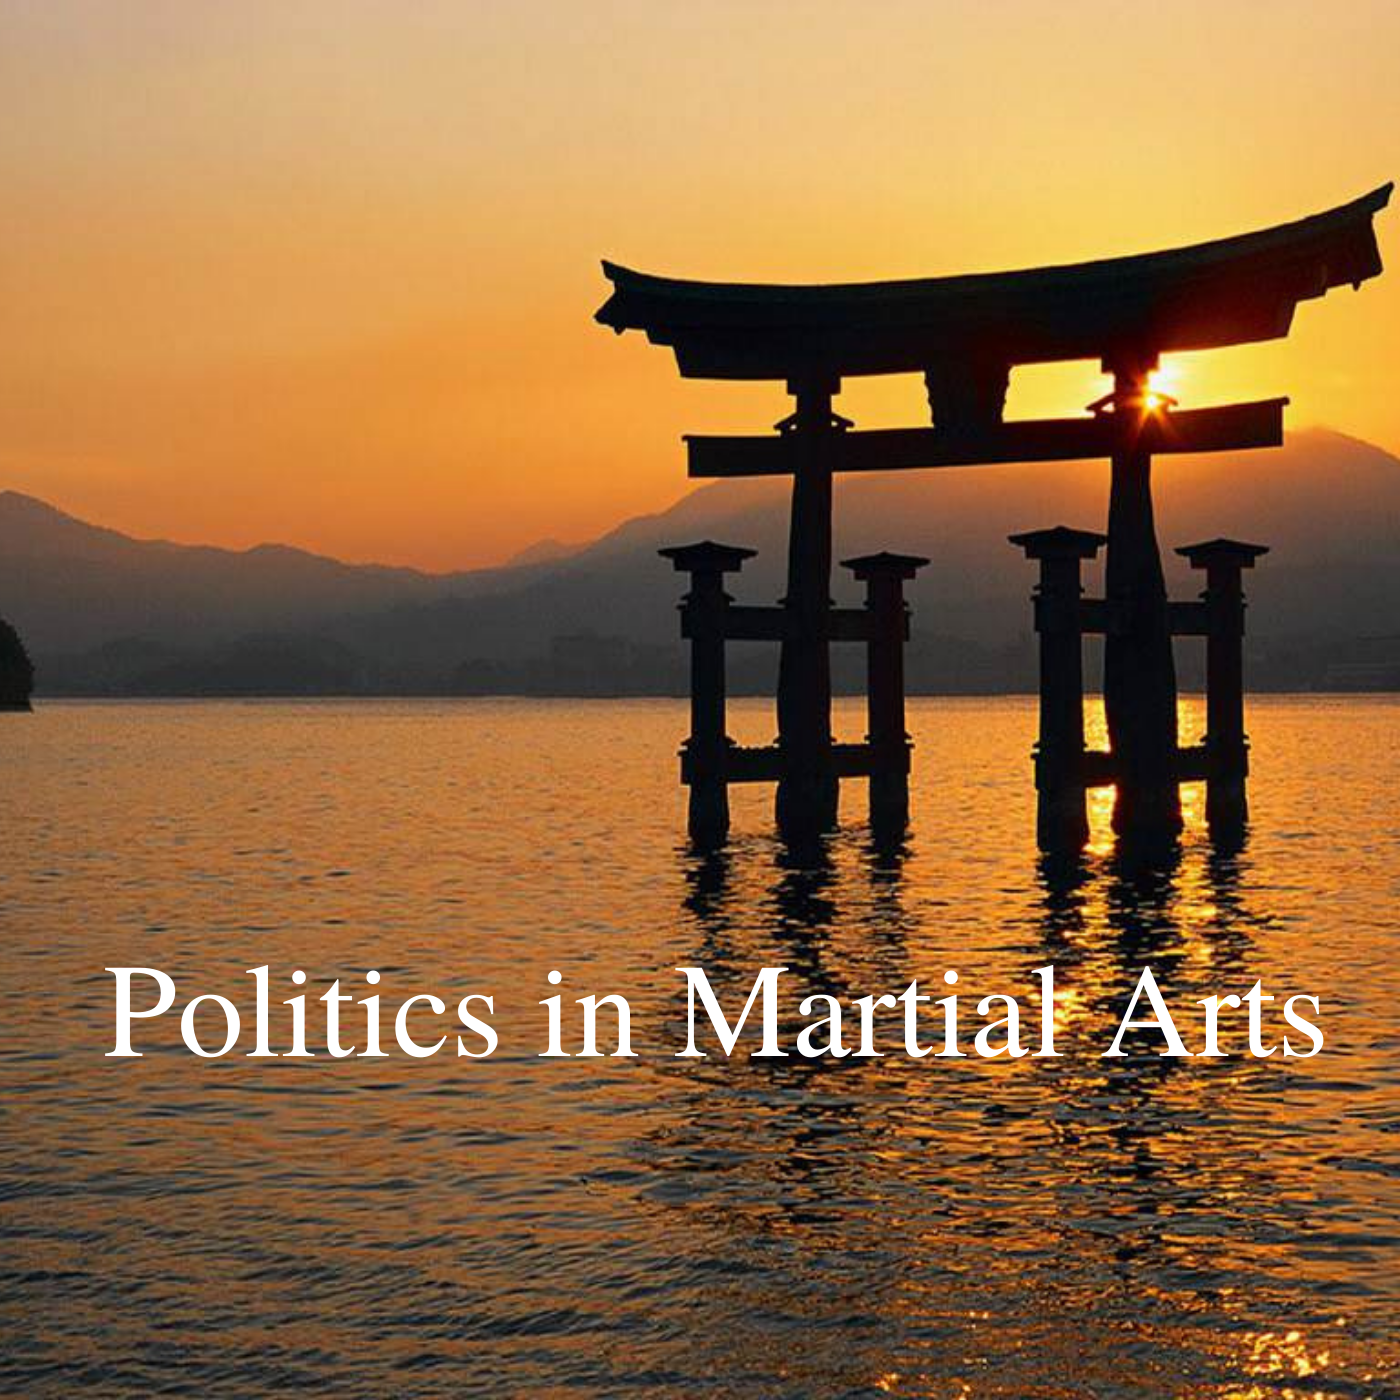 * Politics in Martial Arts